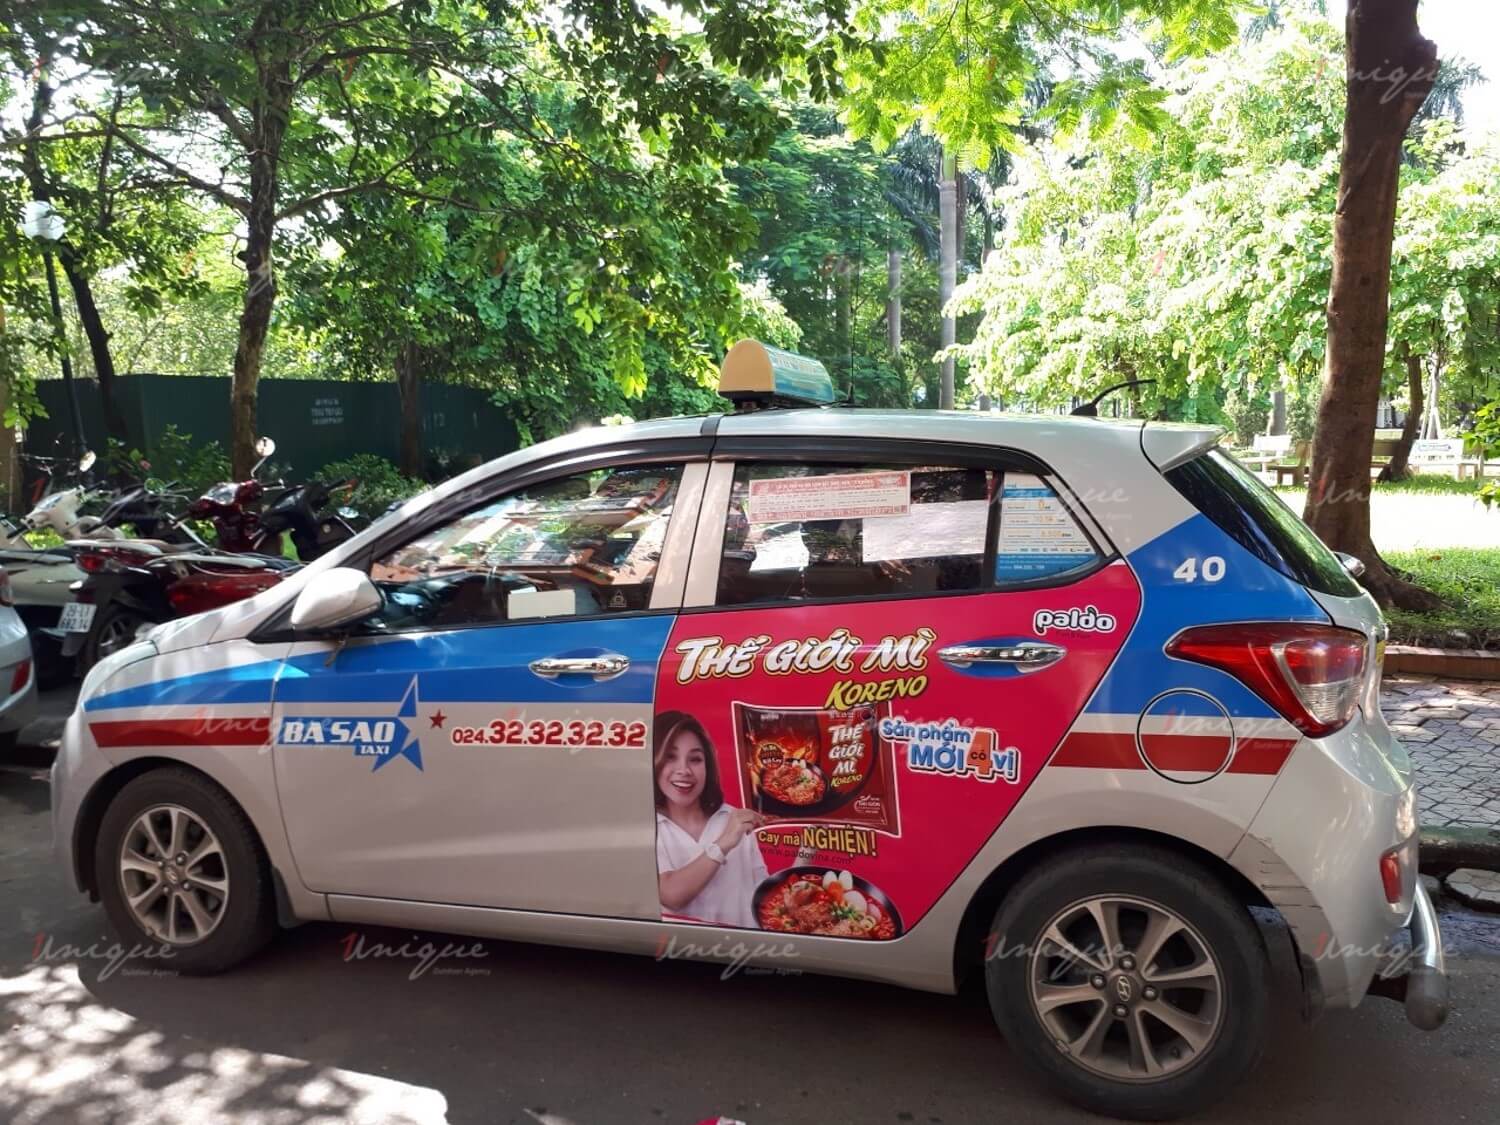 Thế giới mỳ Koreno chạy quảng cáo trên xe taxi